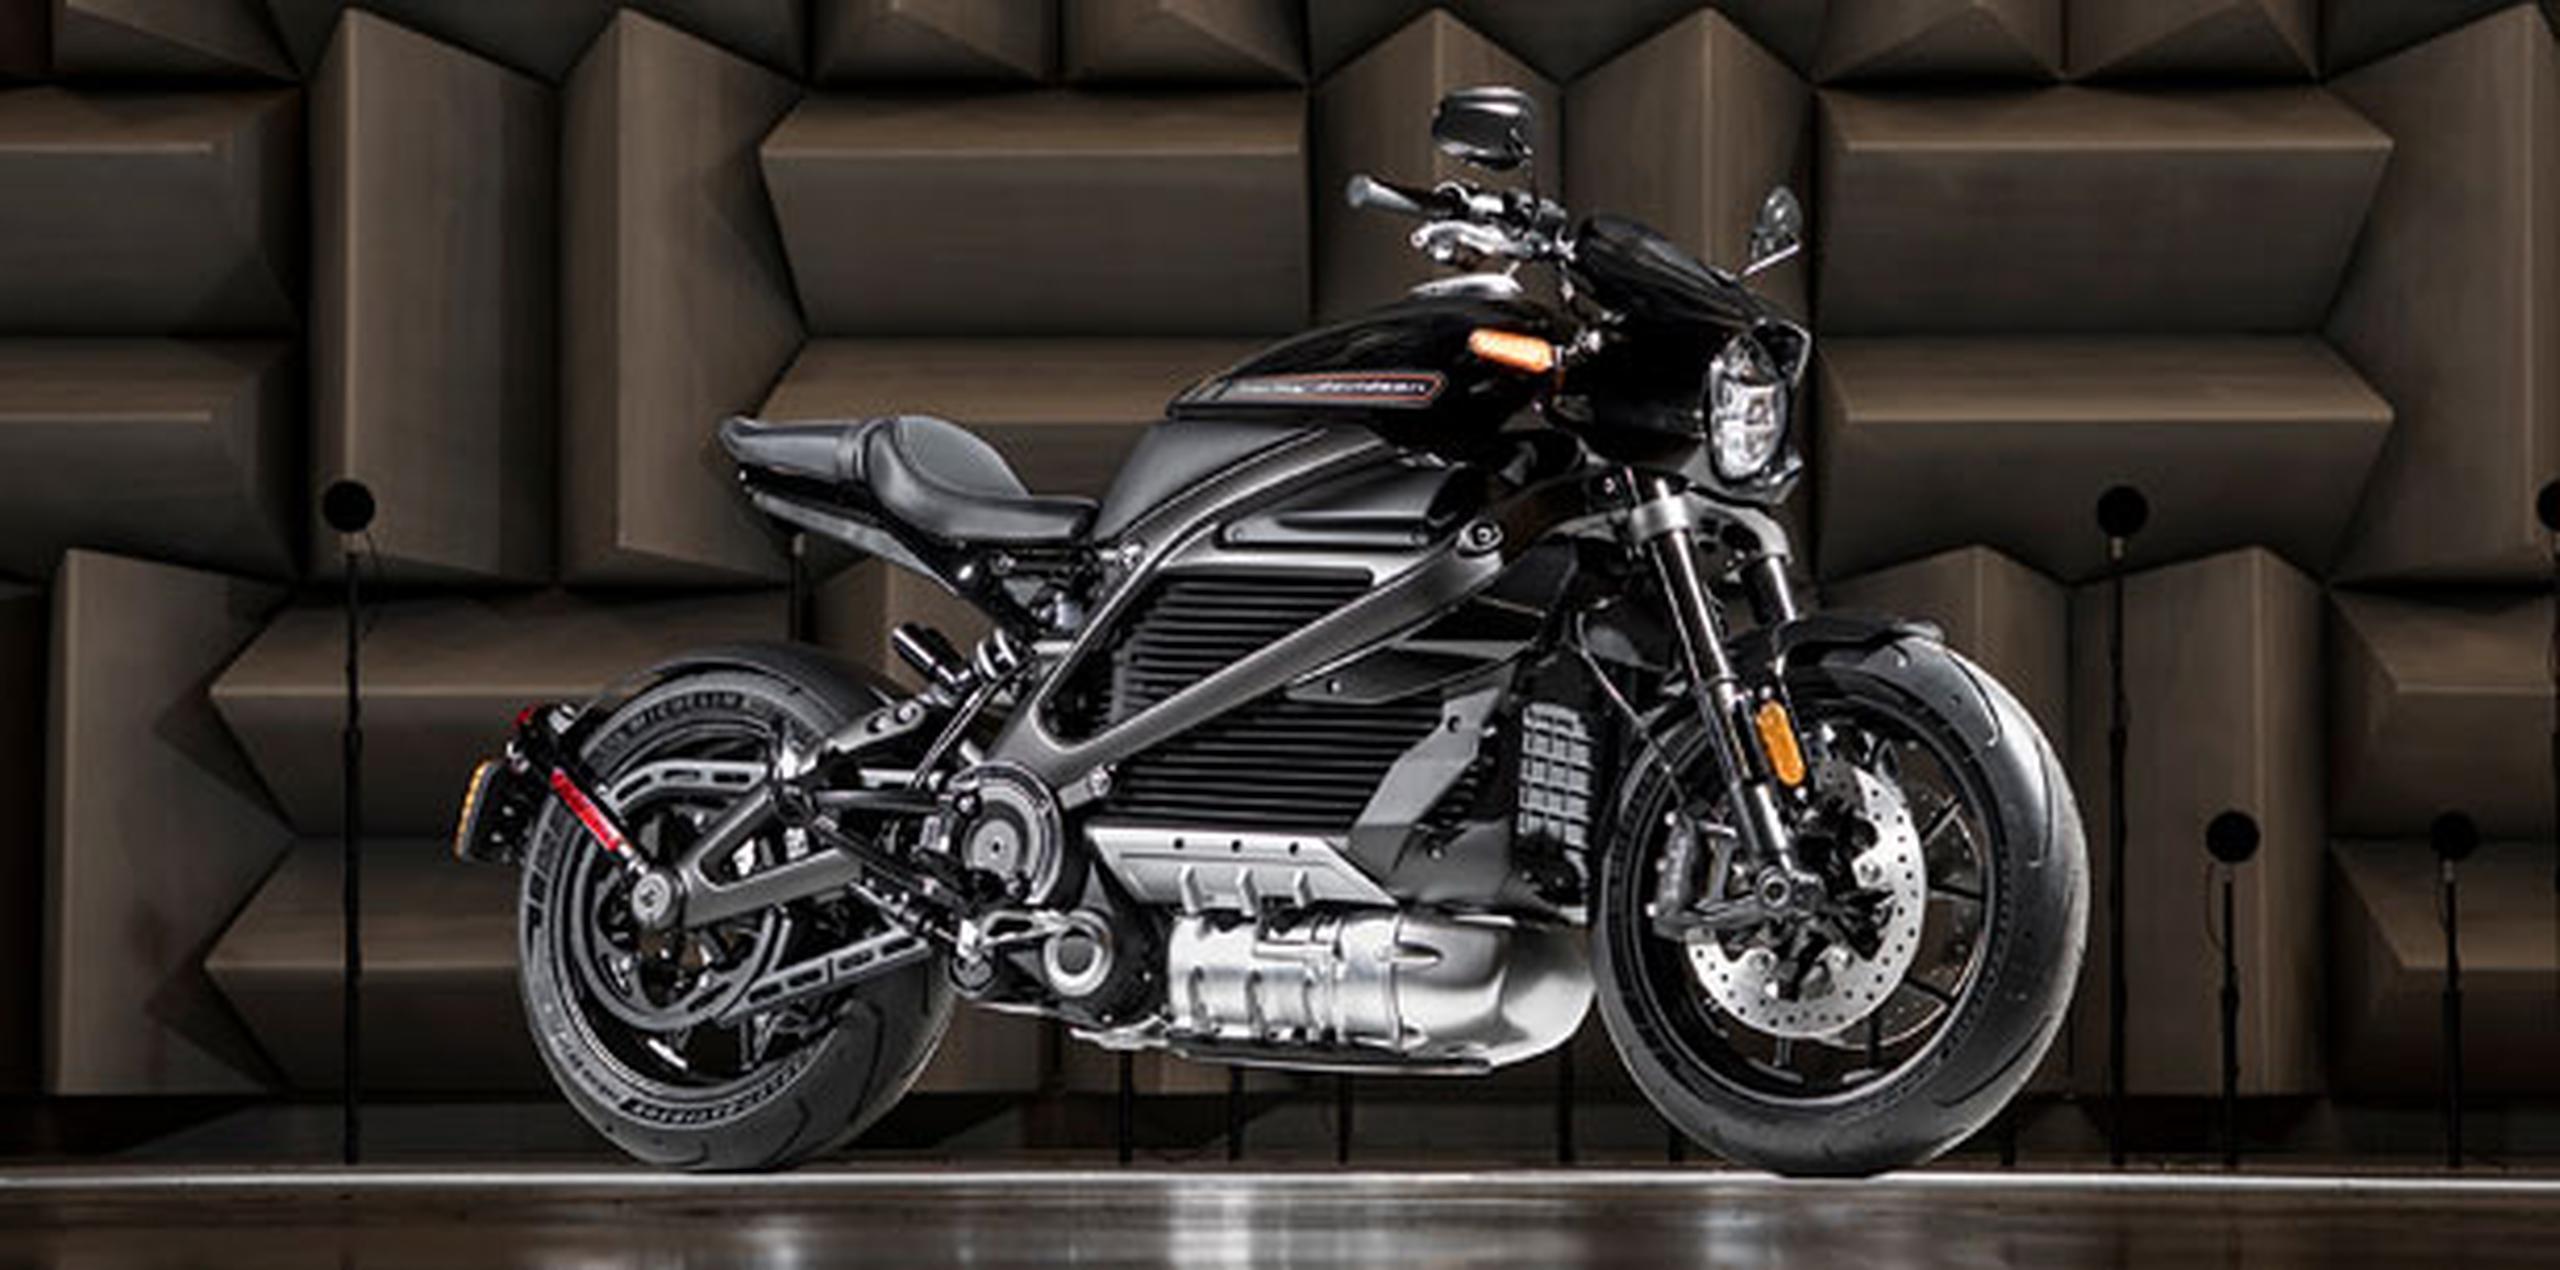 En total, Harley-Davidson dijo que planea lanzar 100 modelos nuevos en los próximos 10 años. (AP)